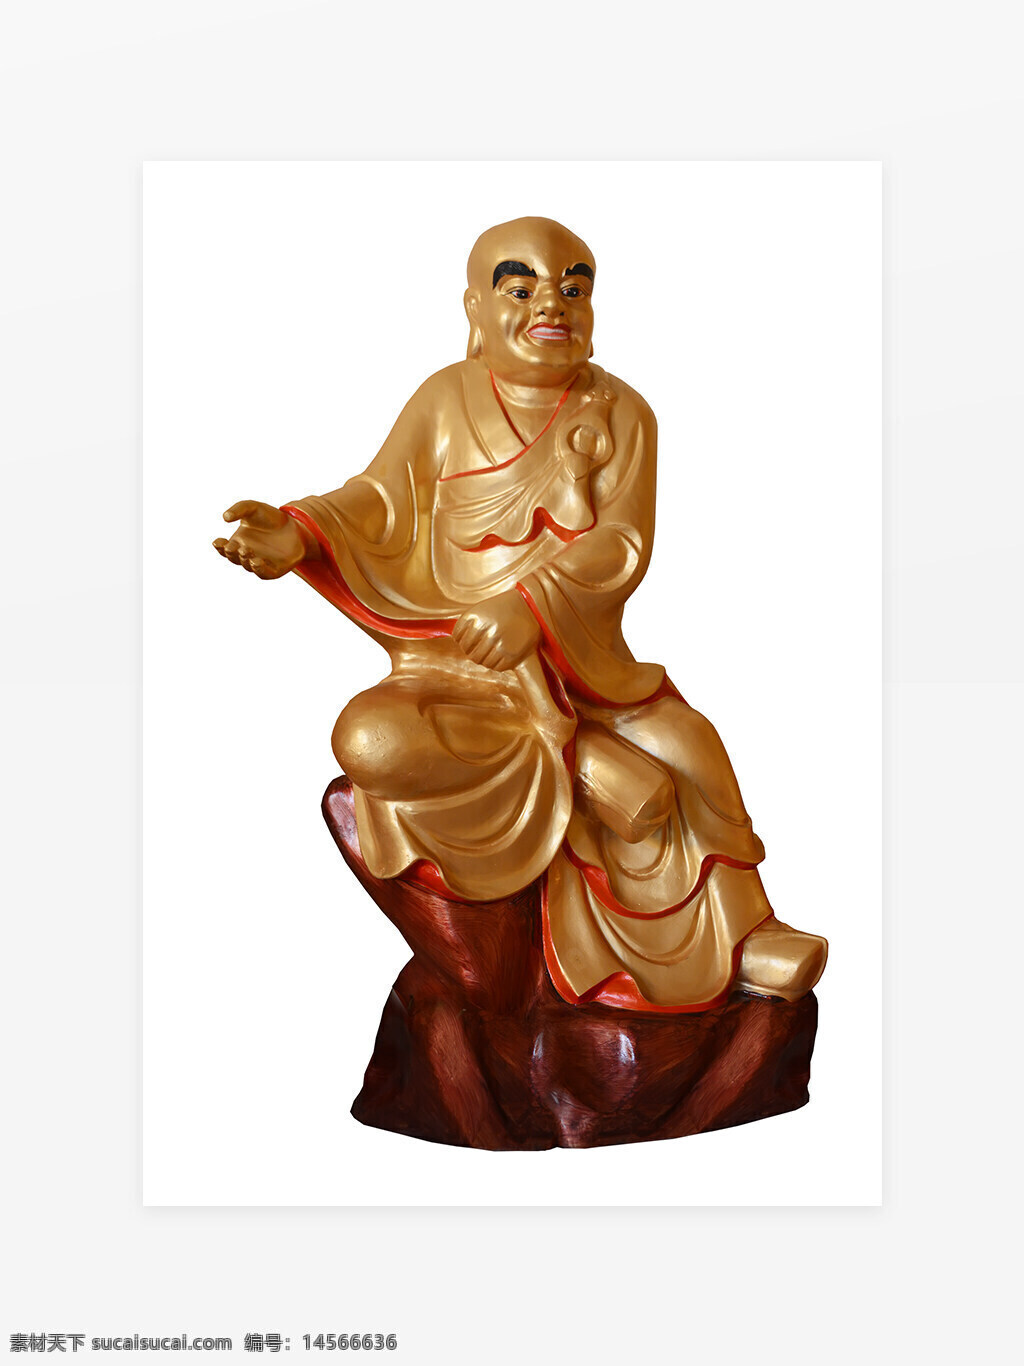 佛教人物元素 背景墙 罗汉 立体佛像 佛教 宗教 神话人物 宗教文化 佛教文化